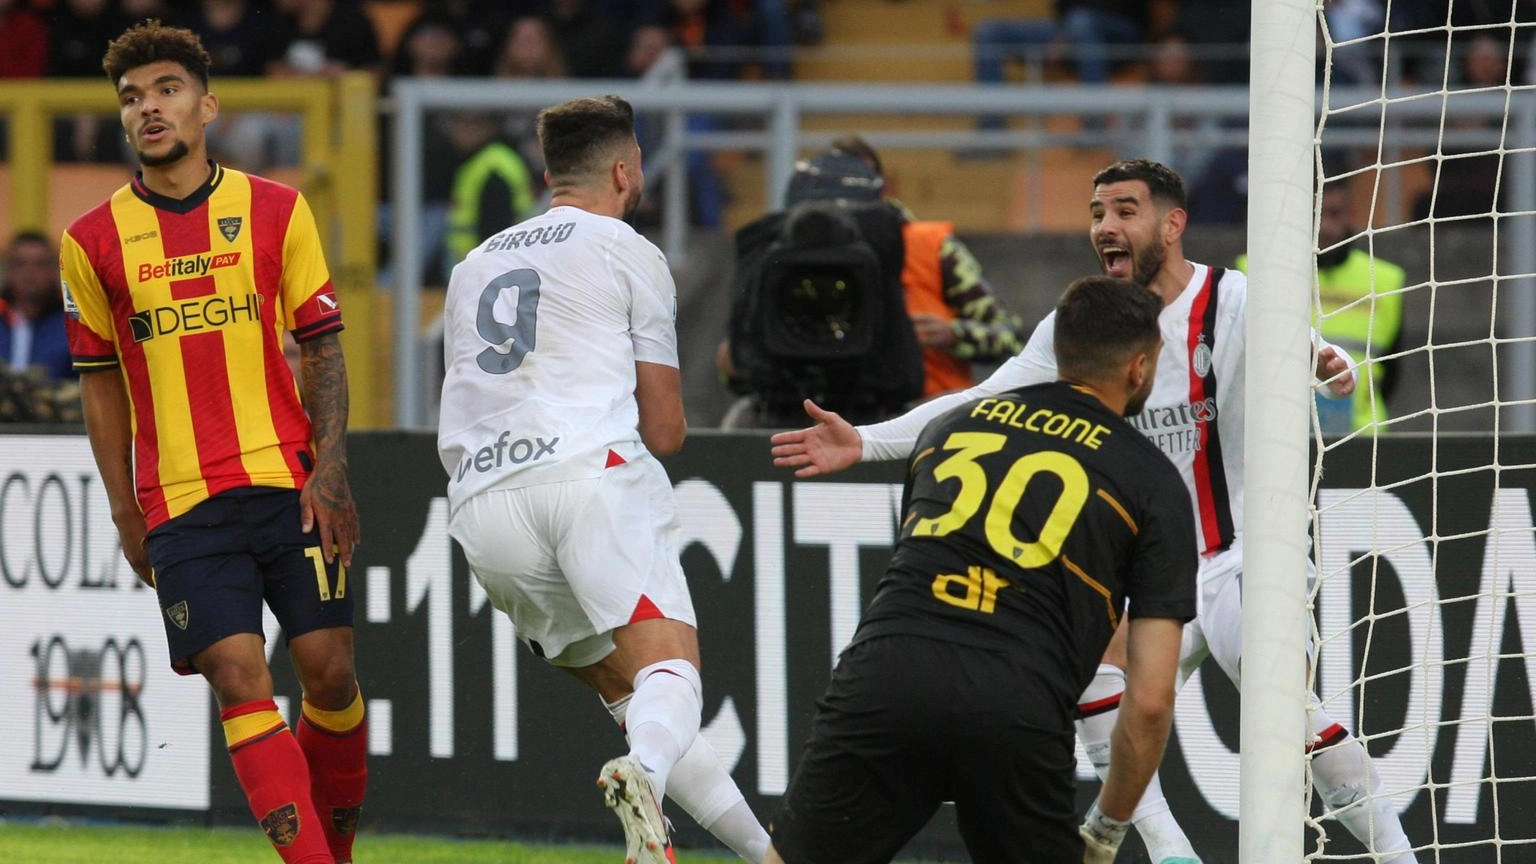 Calcio:2 turni a Giroud, squalificato n.1 Lecce Sticchi Damiani